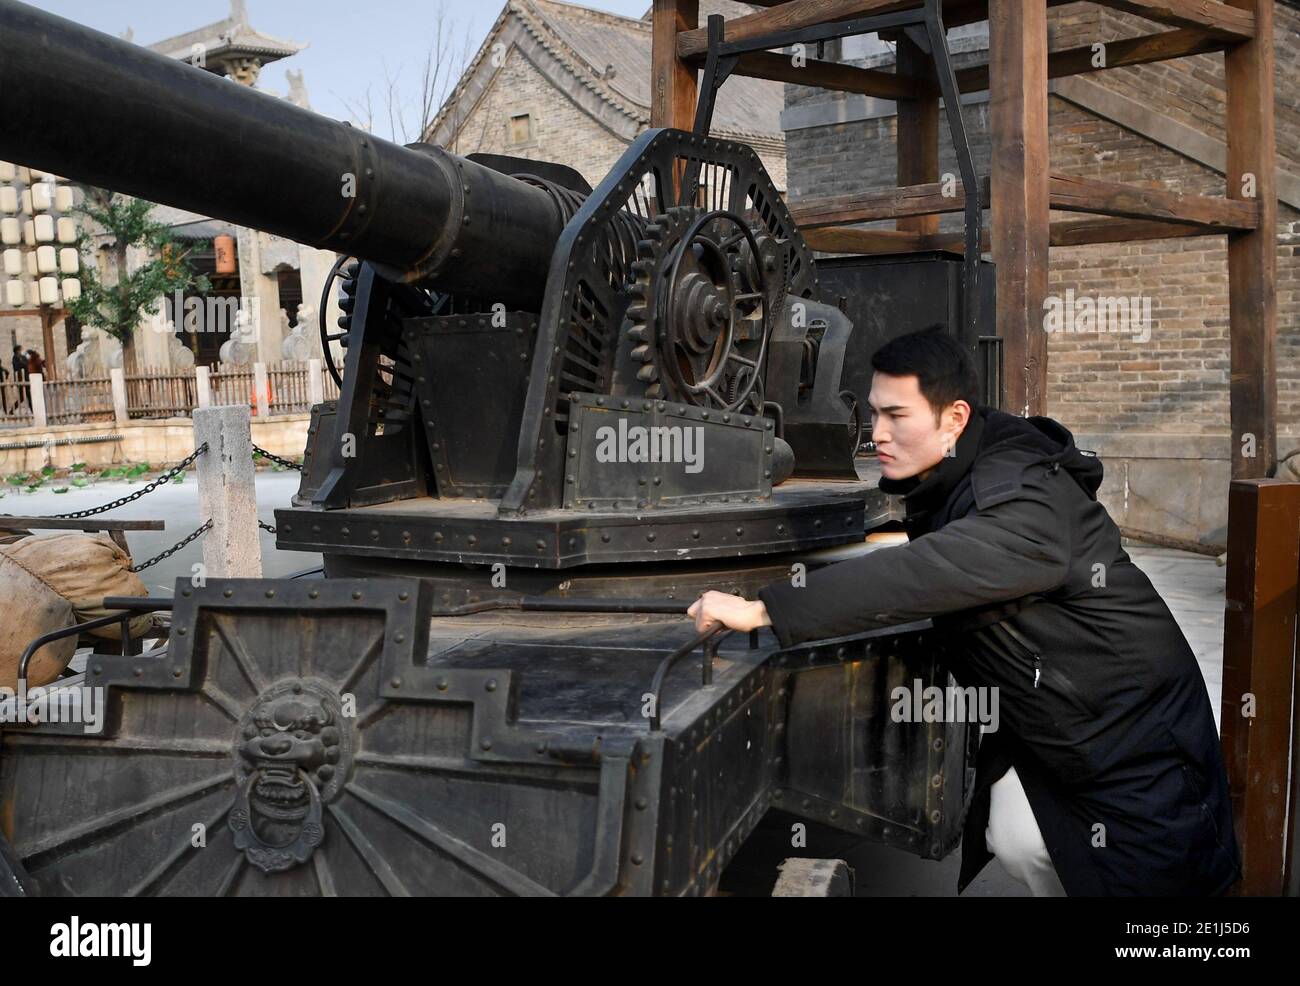 (210107) -- ZHENGZHOU, 7. Januar 2021 (Xinhua) -- Zhou Xin bereitet Bühneneigentum in einer Filmstadt in Zhengzhou, der zentralchinesischen Provinz Henan, vor, 5. Januar 2021. Zhou Xin, ein Post-95s-Absolvent des Studiengangs Choreographie an der Sichuan Normal University, verließ seine Heimatstadt in der Provinz Shanxi und kam im April 2020 aus großer Leidenschaft für Film und Schauspiel in die Jianye & H. Brothers Movie Town in Zhengzhou. Von Make-up bis zur Kostümvorbereitung, von der Probe bis zur formalen Aufführung, Zhou ist gewissenhaft in Bezug auf jedes Detail. Zhou gehört zu den 185 Schauspielern und Schauspielerinnen wie er, die ihren Träumen im m nachjagen Stockfoto